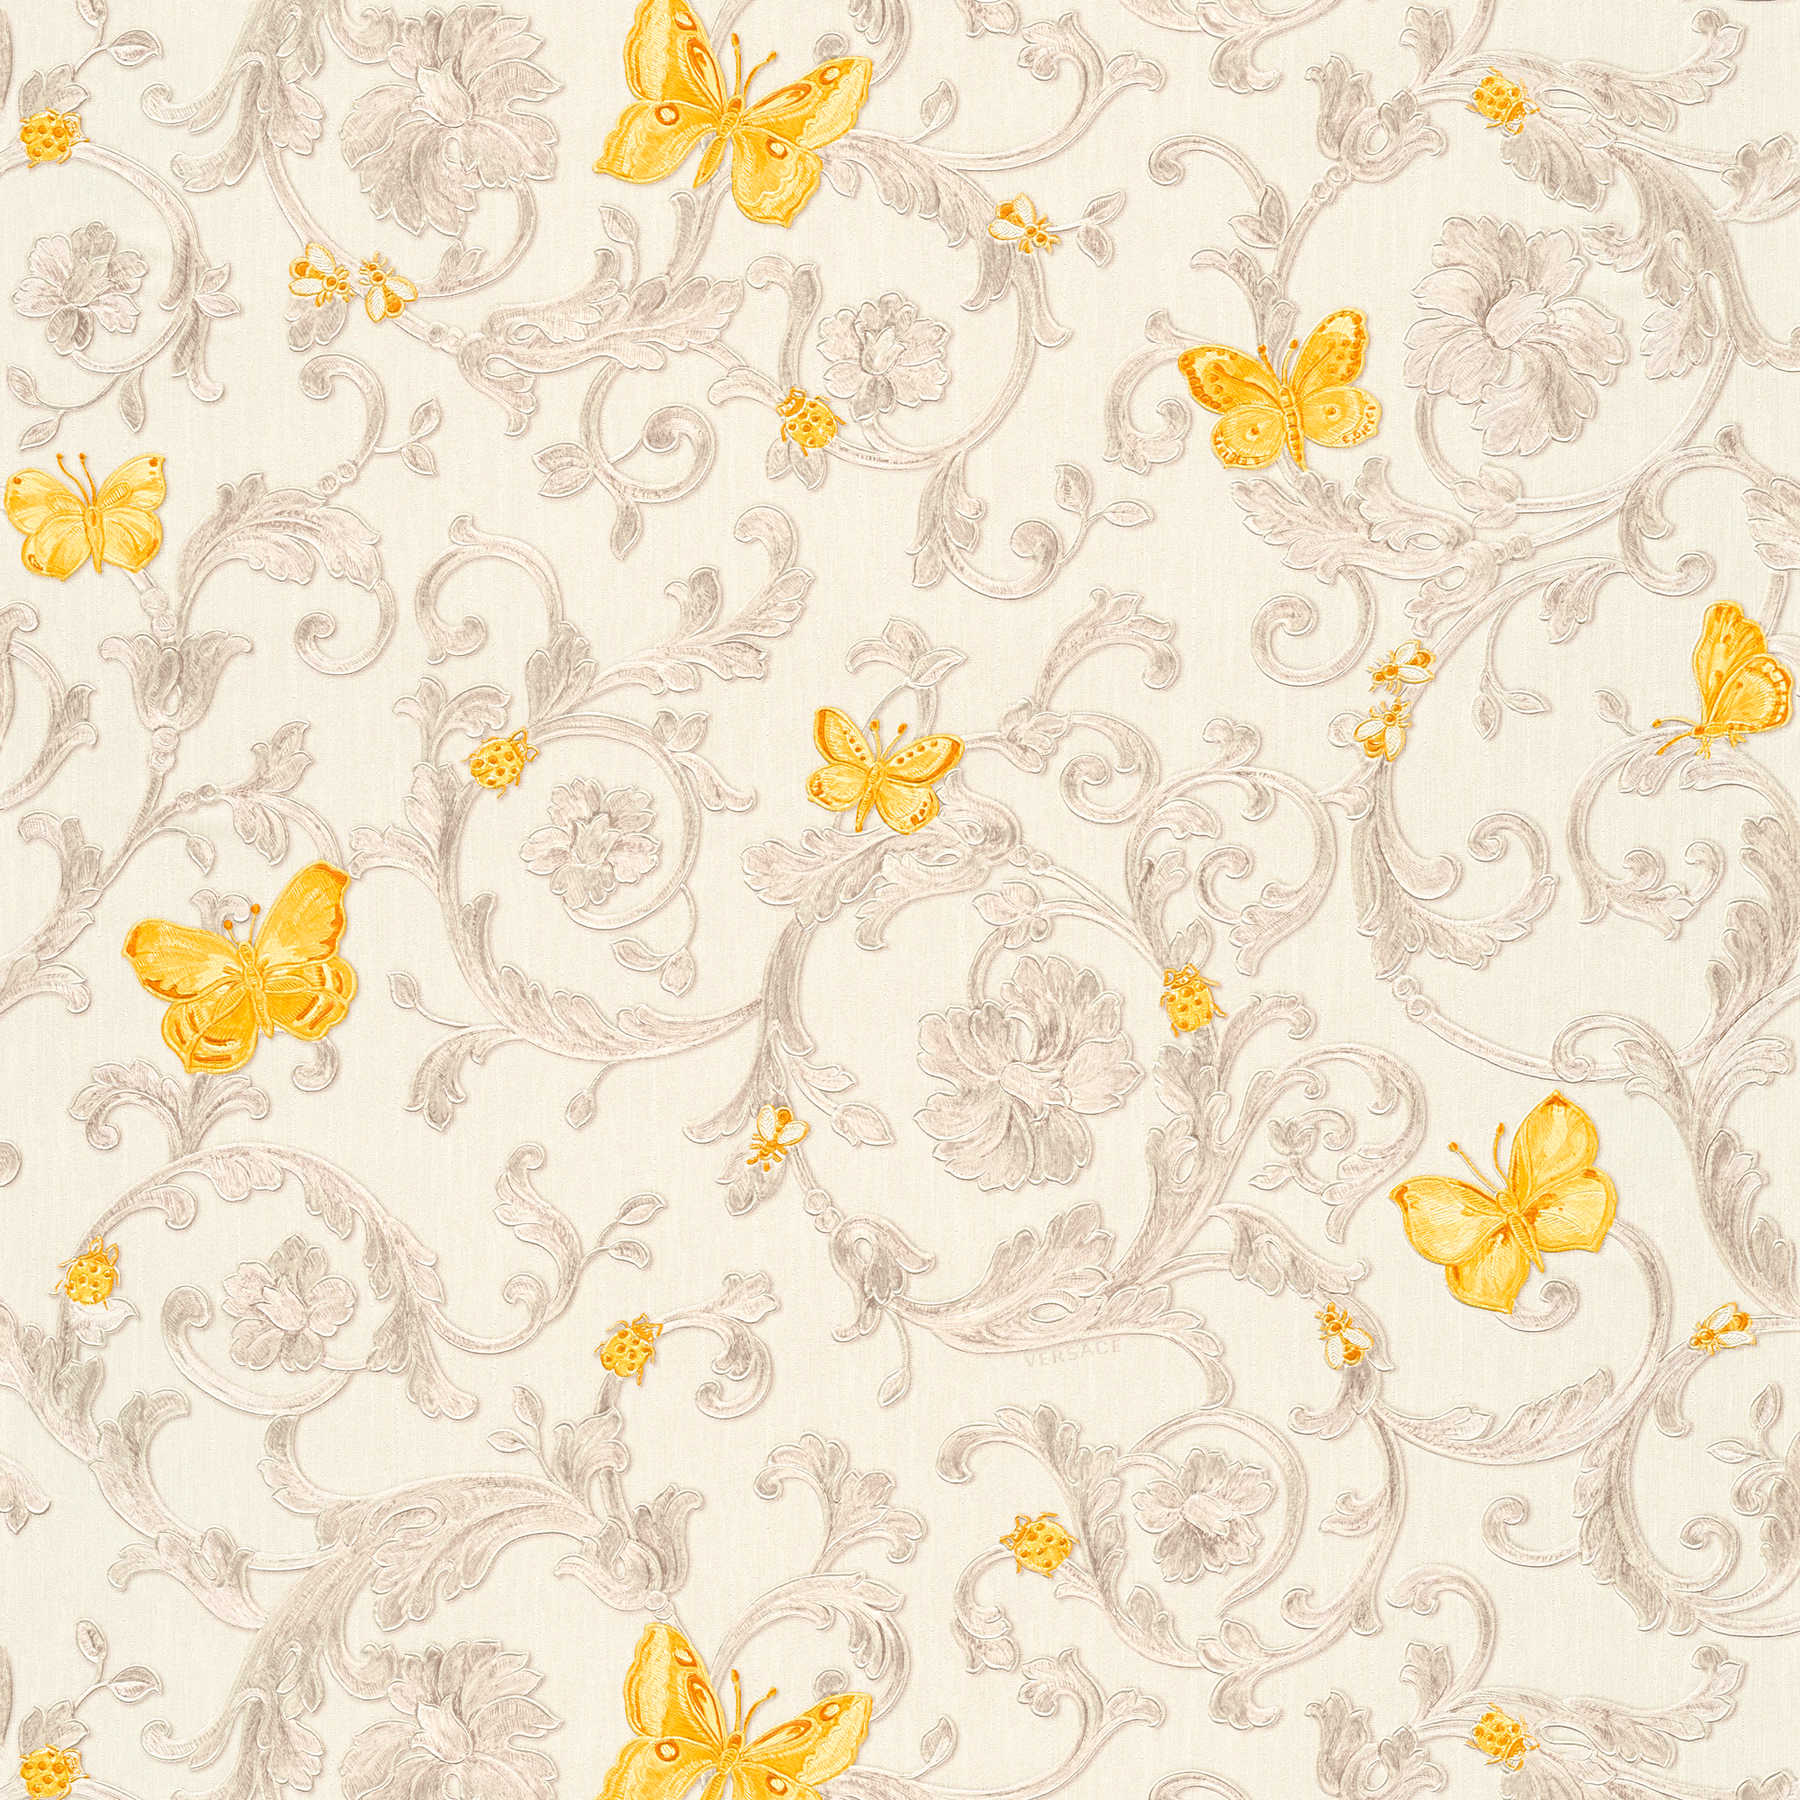 VERSACE behangpapier met vlinders & ornamenten - crème, goud
